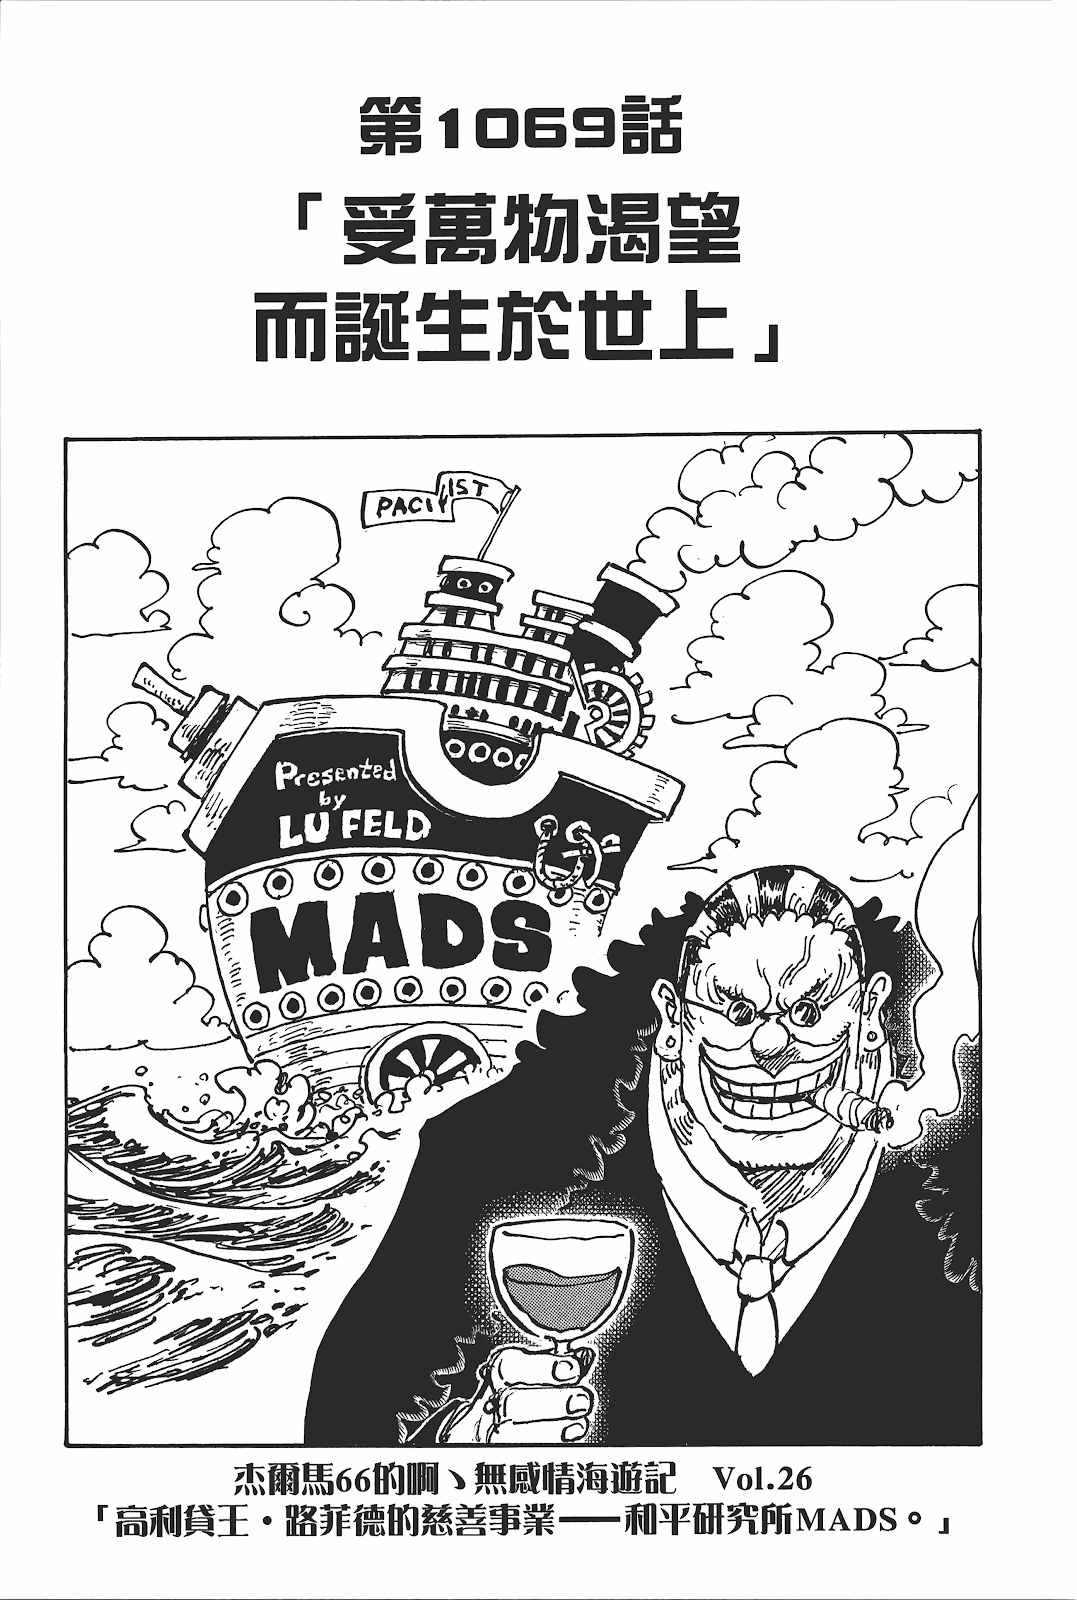 One Piece Volume 106 SBS - Megathread : r/OnePiece